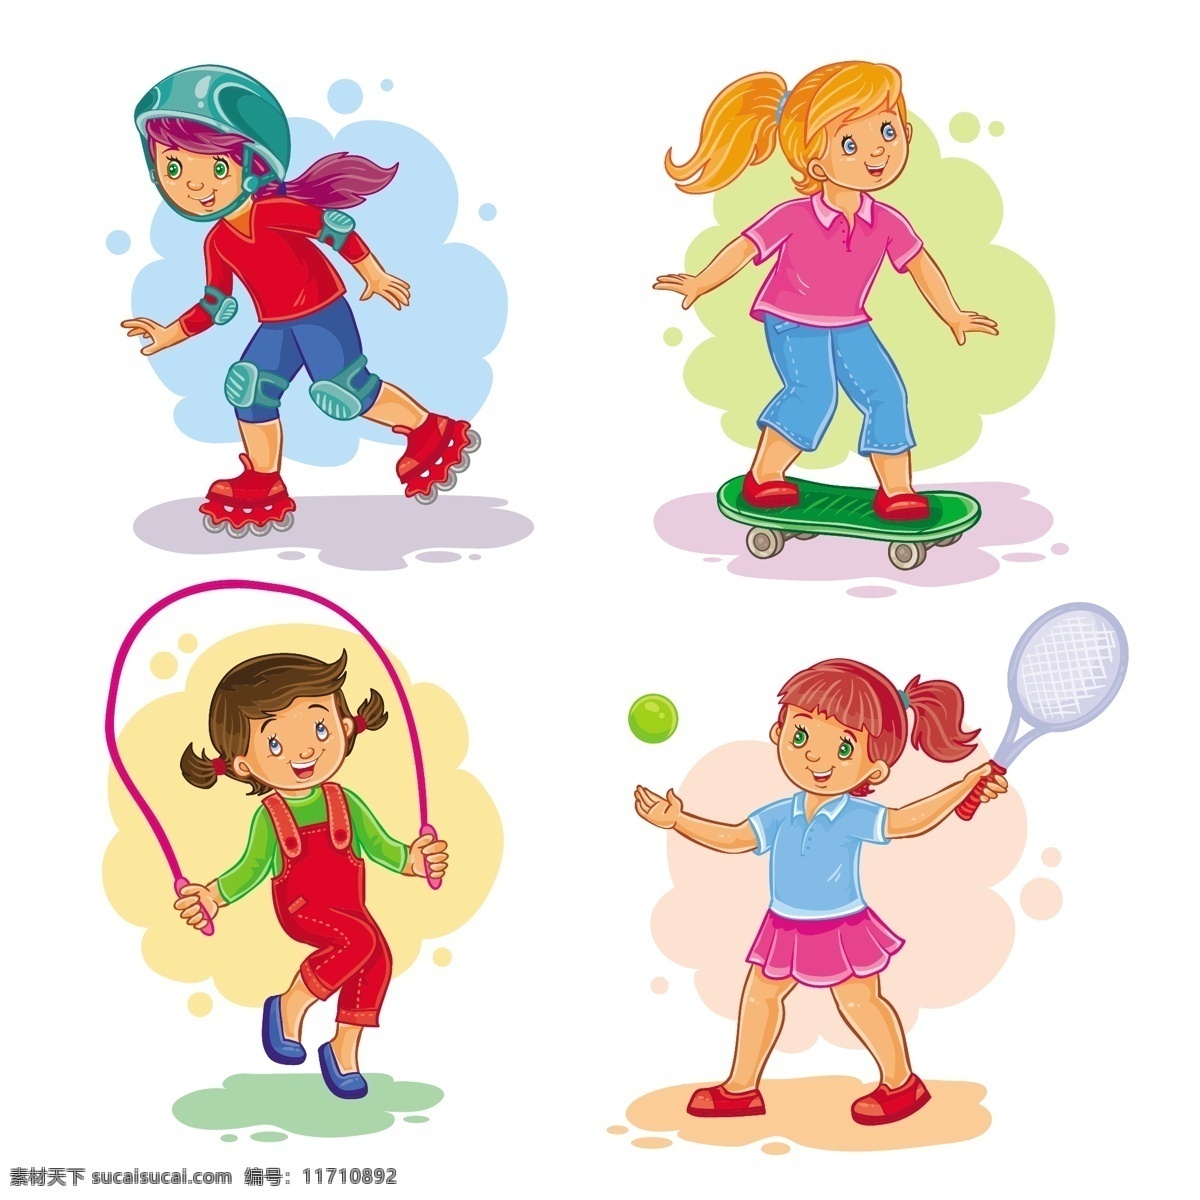 可爱 卡通 儿童 玩耍 运动 矢量 女孩 轮滑 滑板车 跳绳 打网球 学生 游戏 孩子 插画 动漫动画 动漫人物